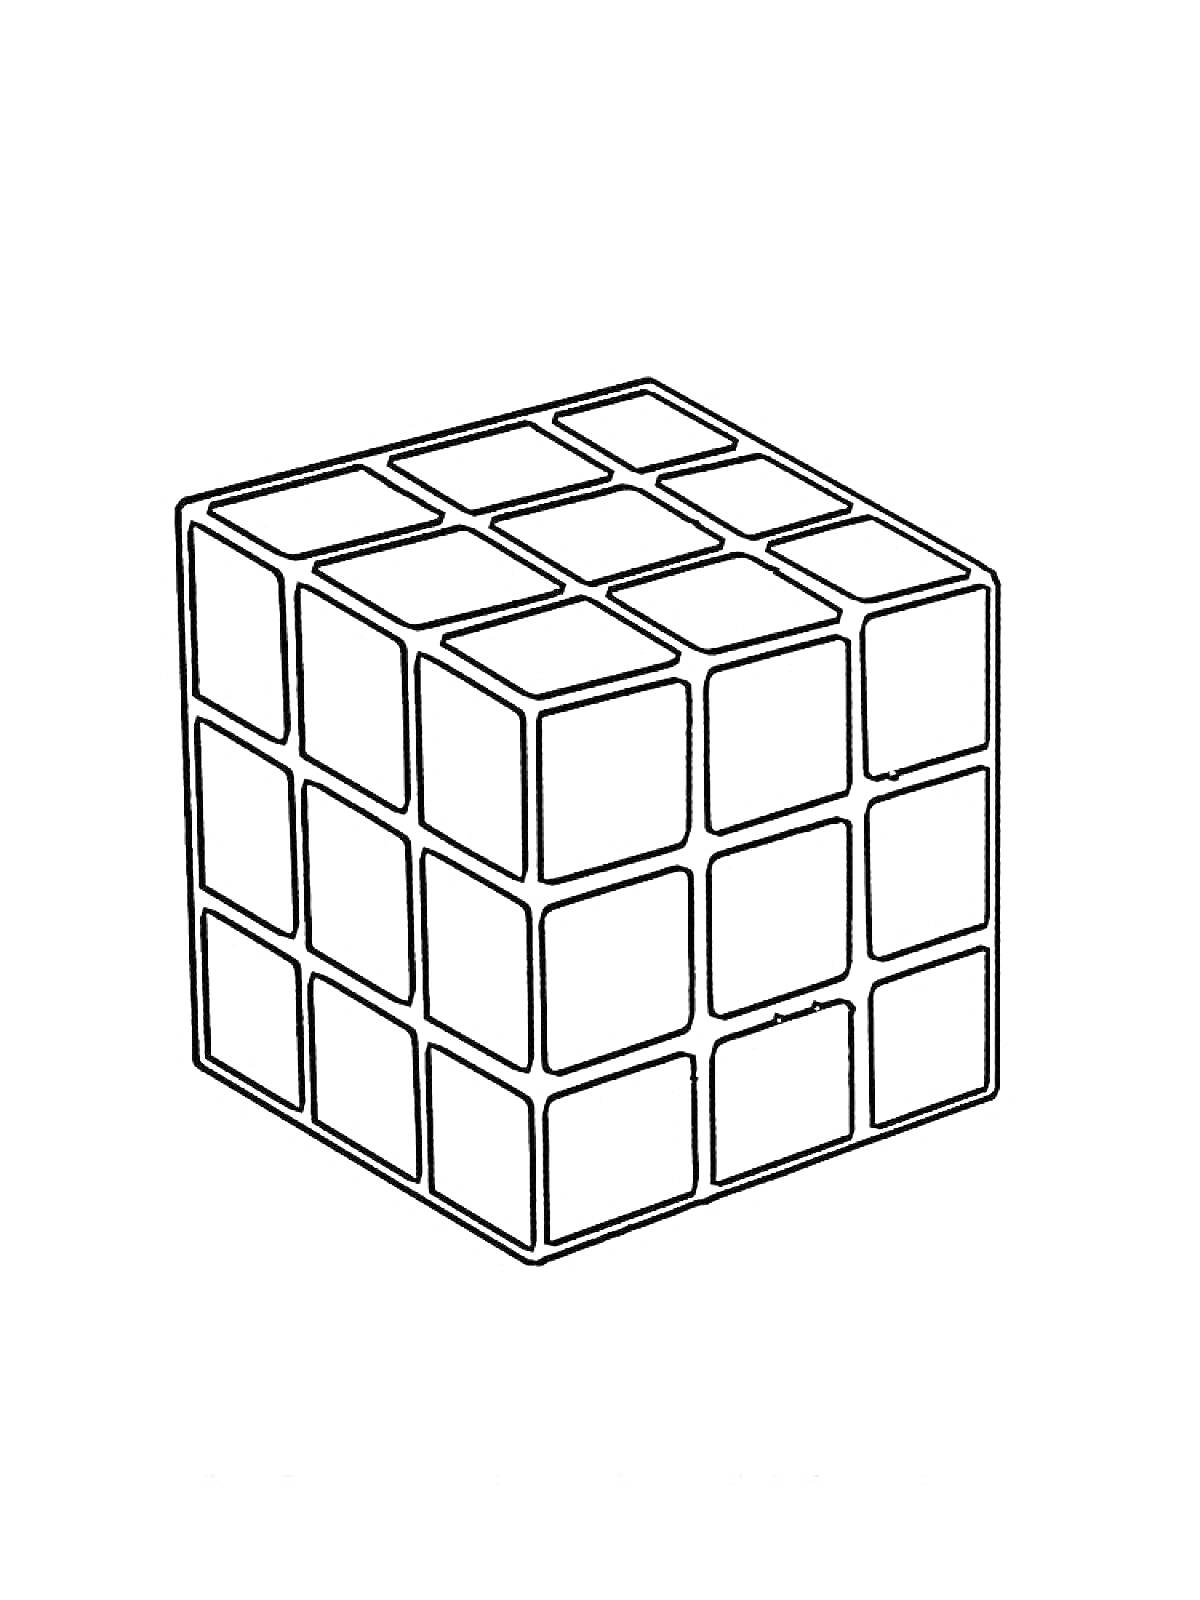 Раскраска Кубик Рубика в виде раскраски, куб из отдельных квадратов, пустые клетки для раскрашивания.